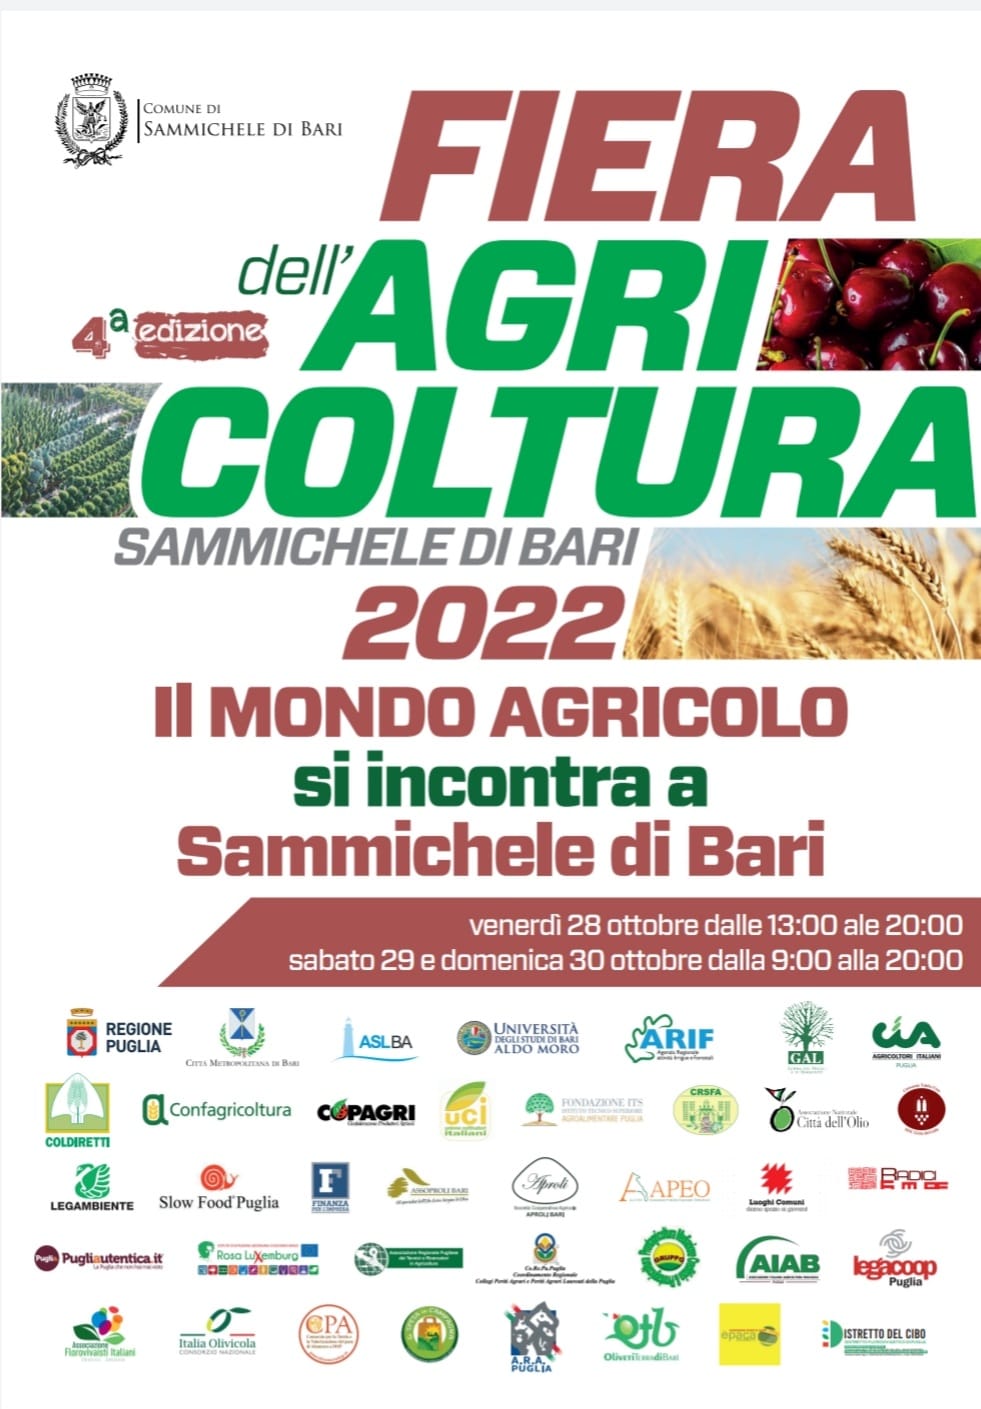 Sammichele di Bari, Fiera dell'agricoltura: il meeting del mondo agricolo